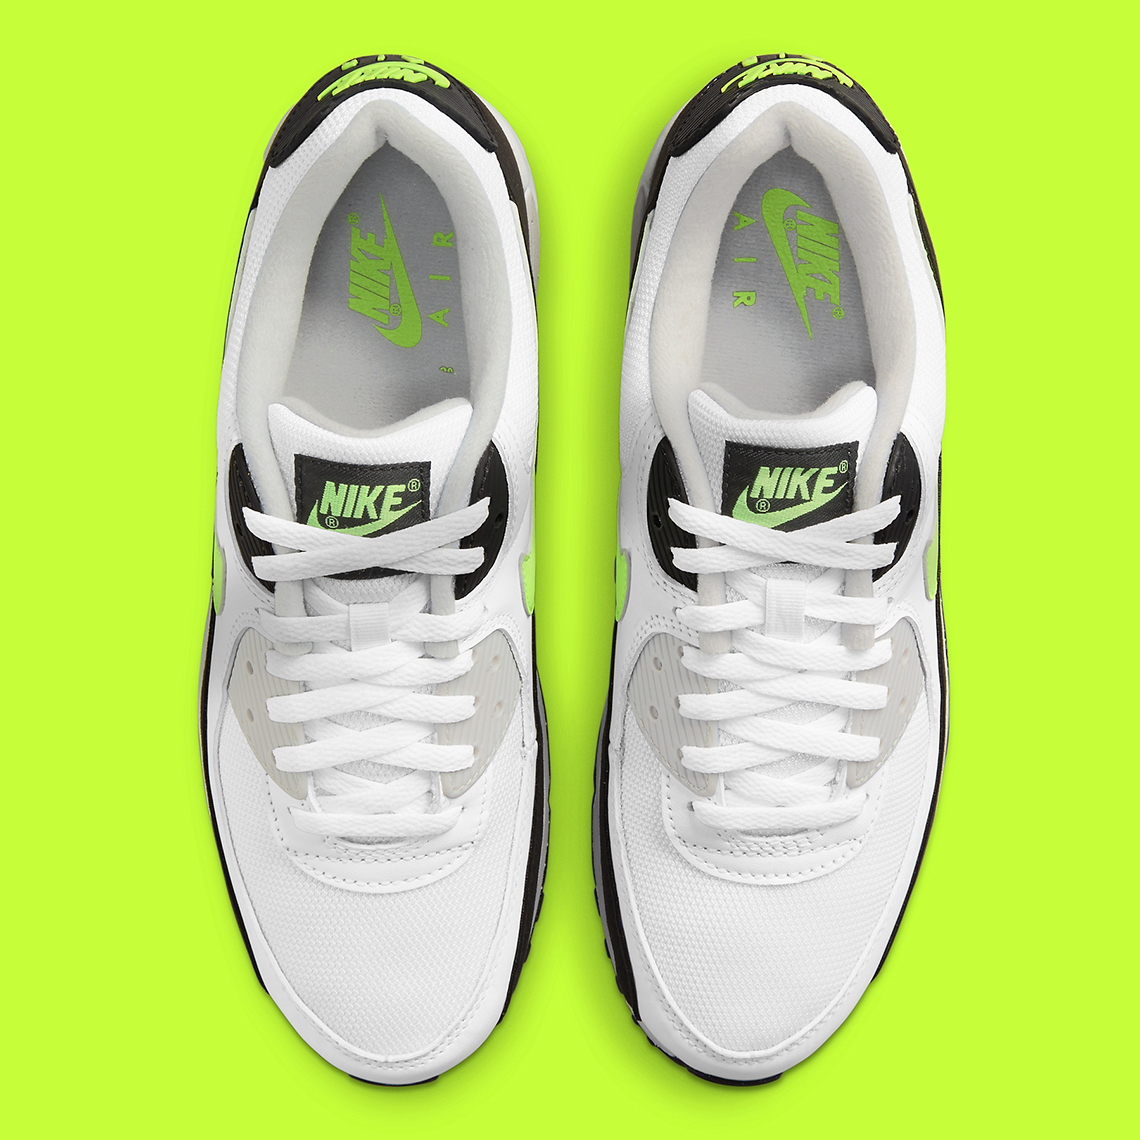 Nike Air Max 90 Hot Lime Cz1846 100 6